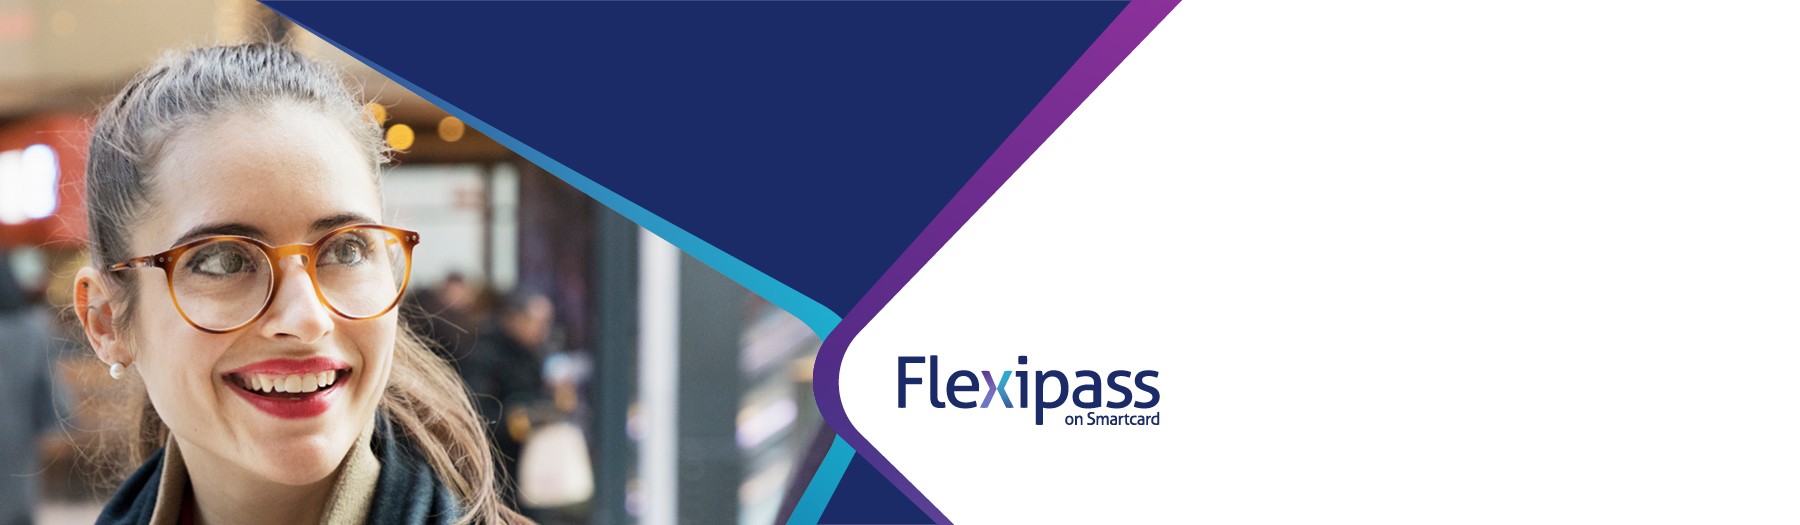 Flexipass on Smartcard